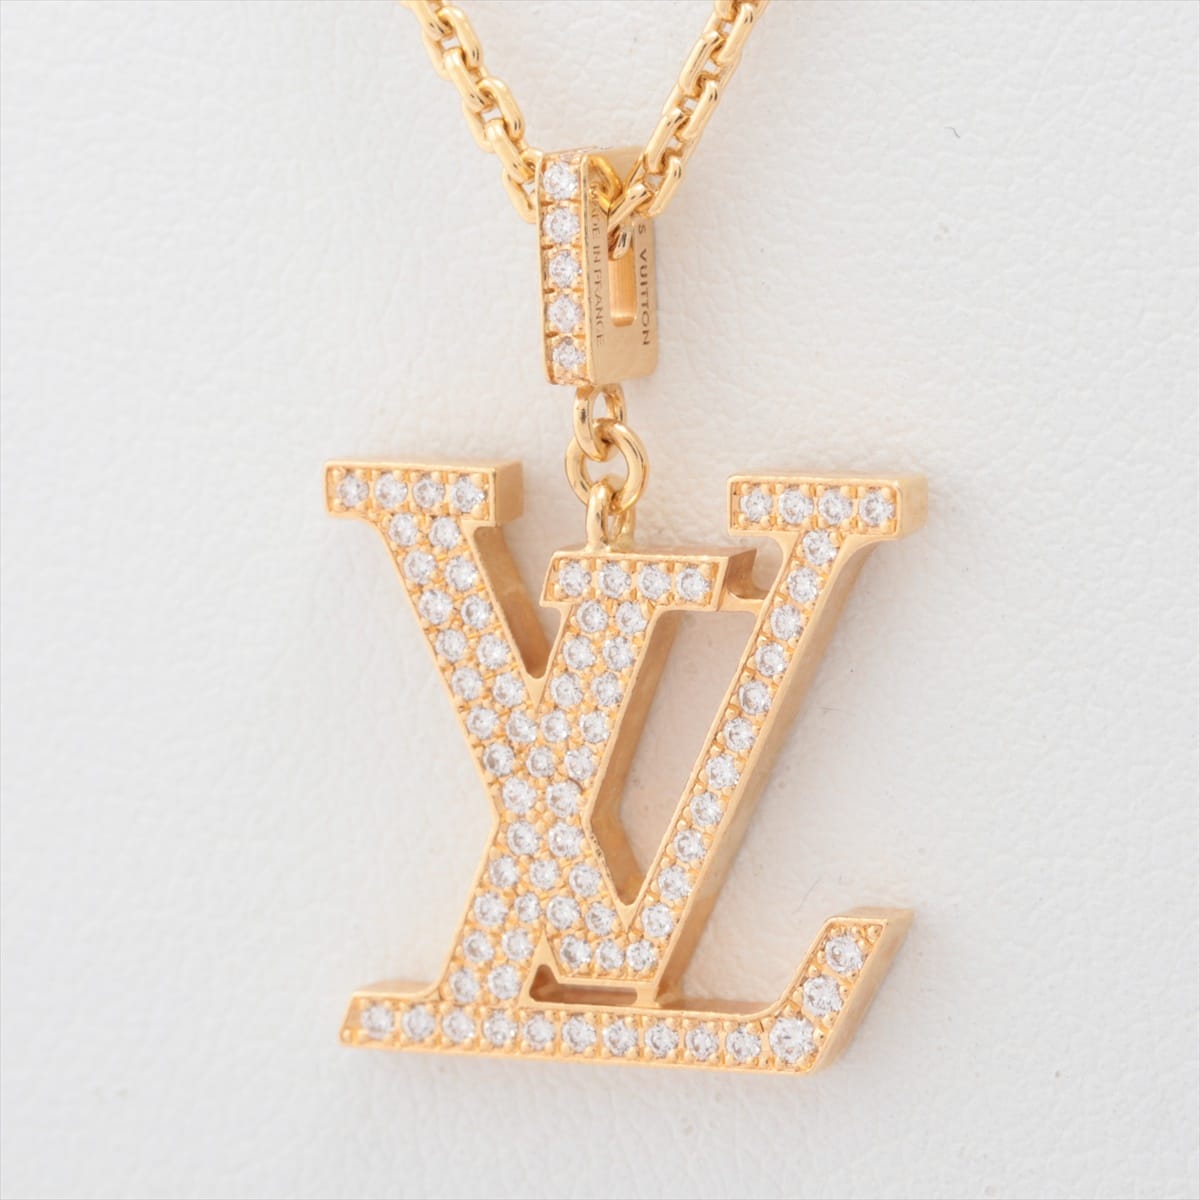 Louis Vuitton Pandantif LV GM diamond Necklace 750(YG) 10.3g